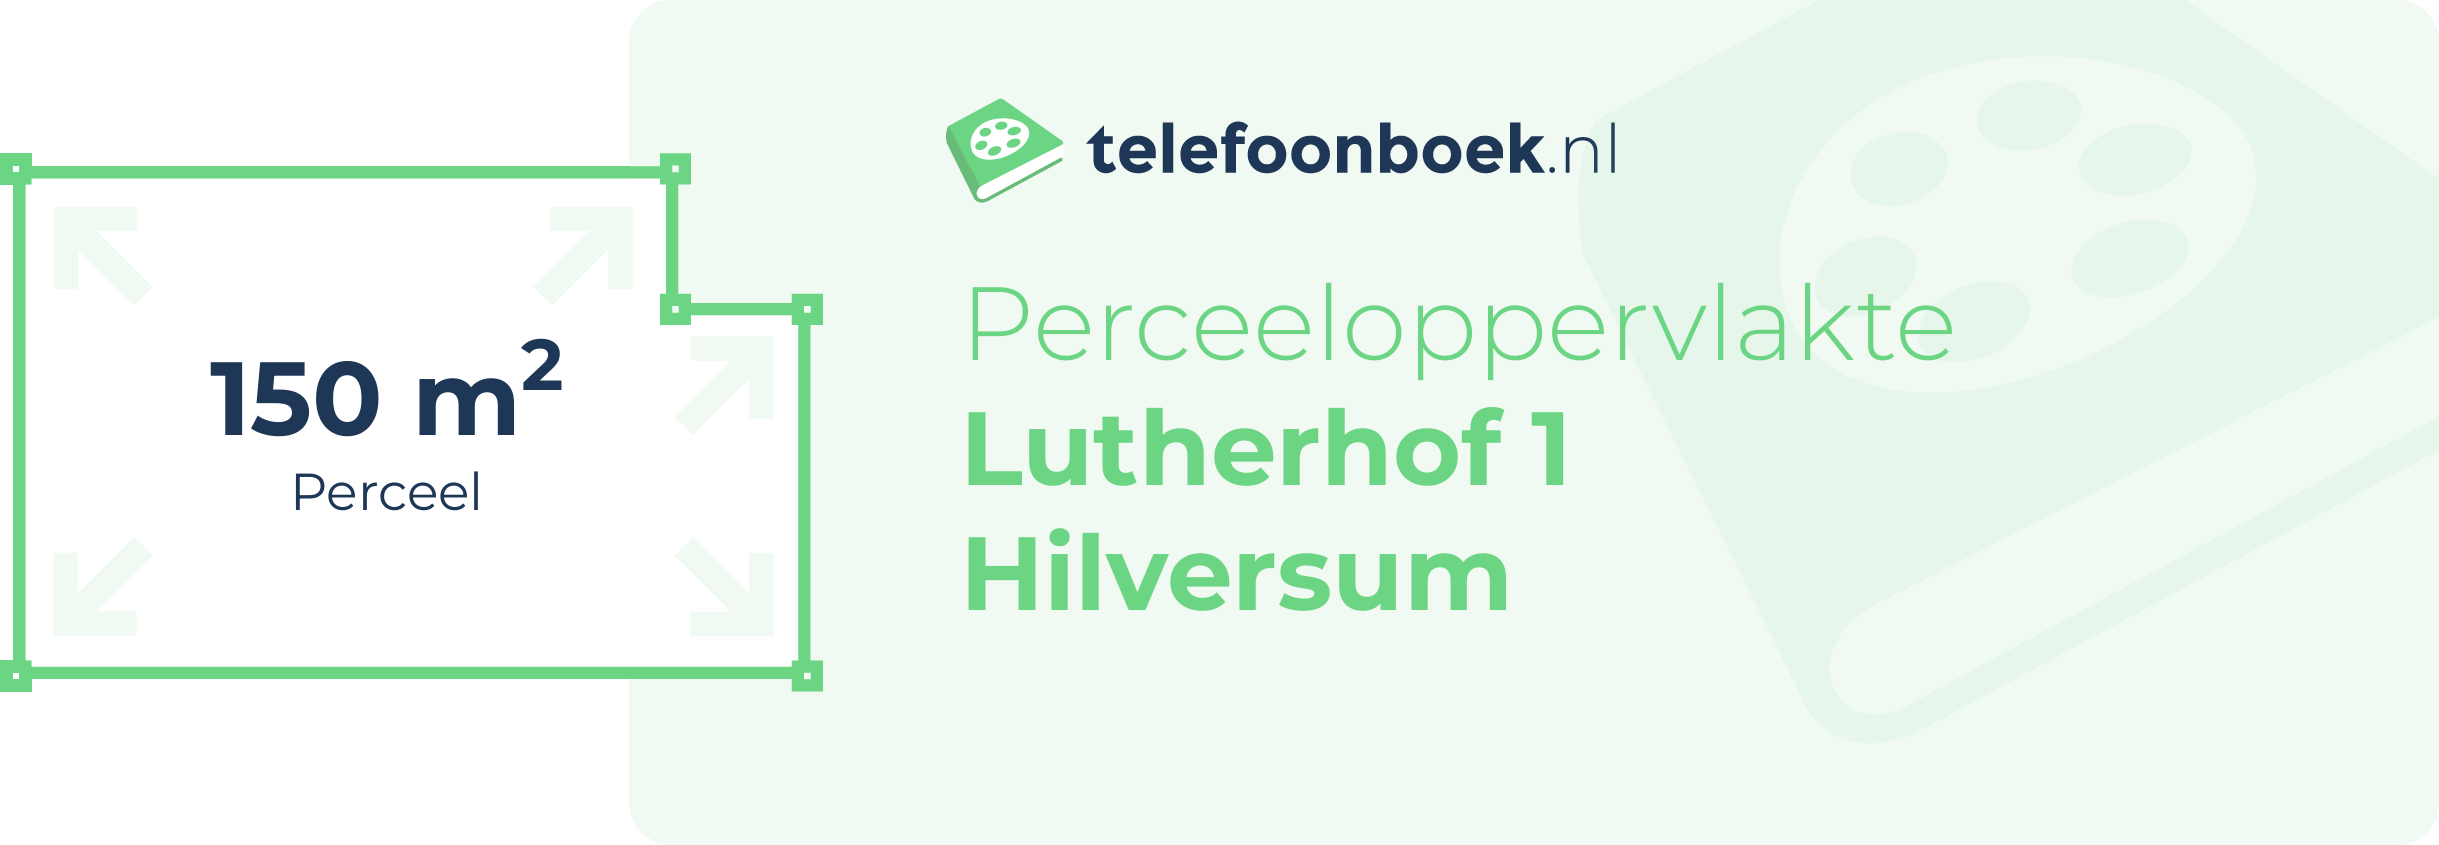 Perceeloppervlakte Lutherhof 1 Hilversum